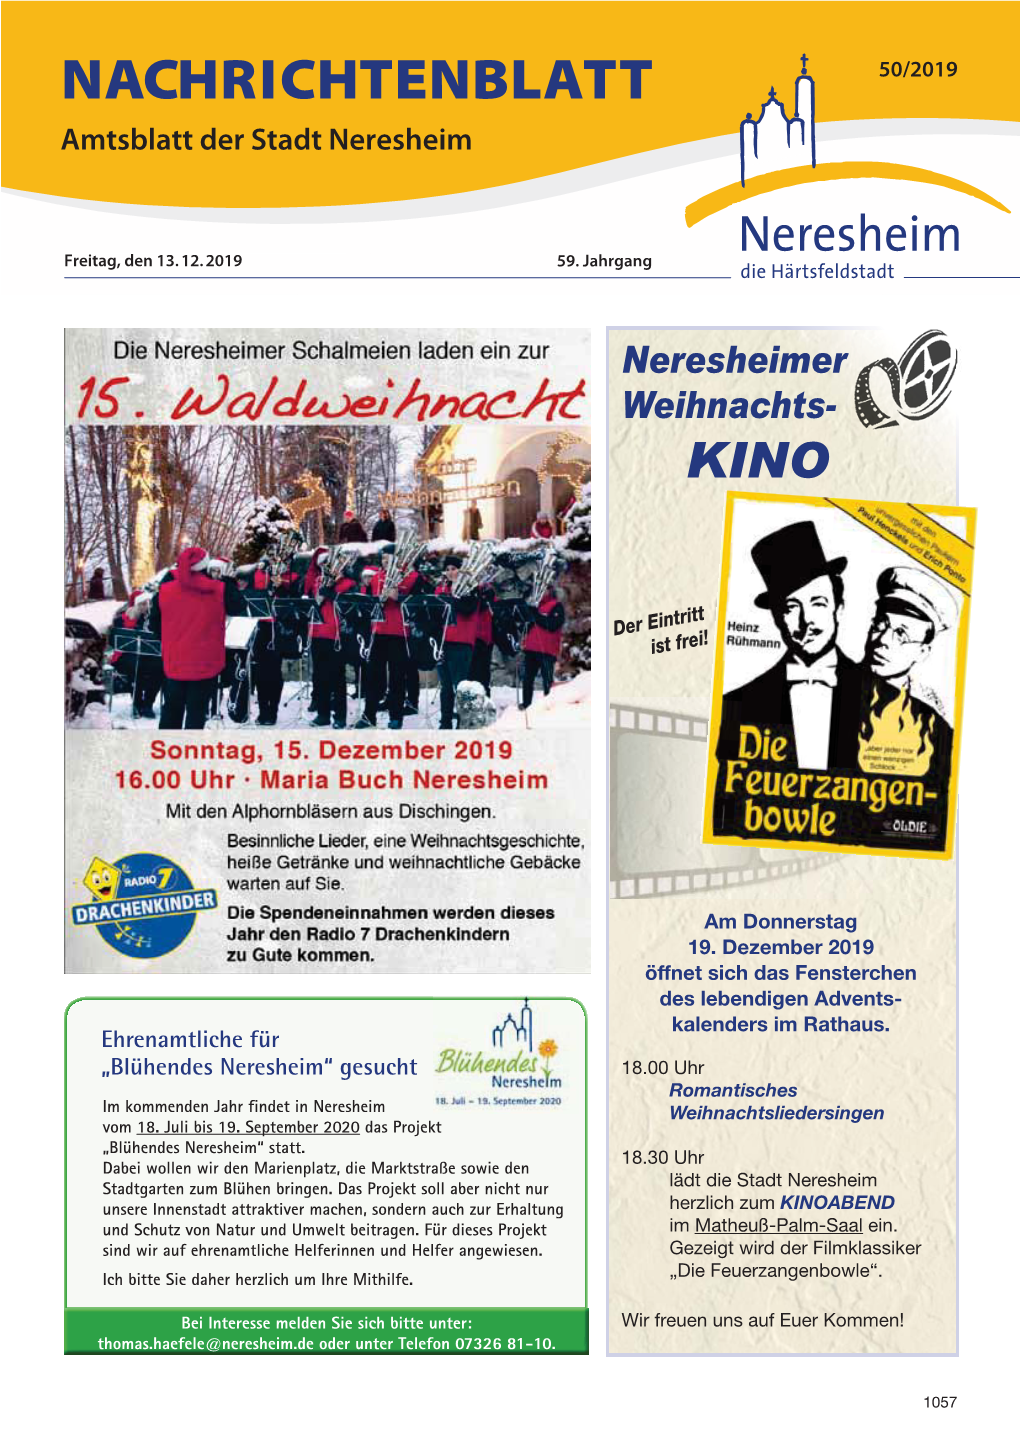 NACHRICHTENBLATT 50/2019 Amtsblatt Der Stadt Neresheim